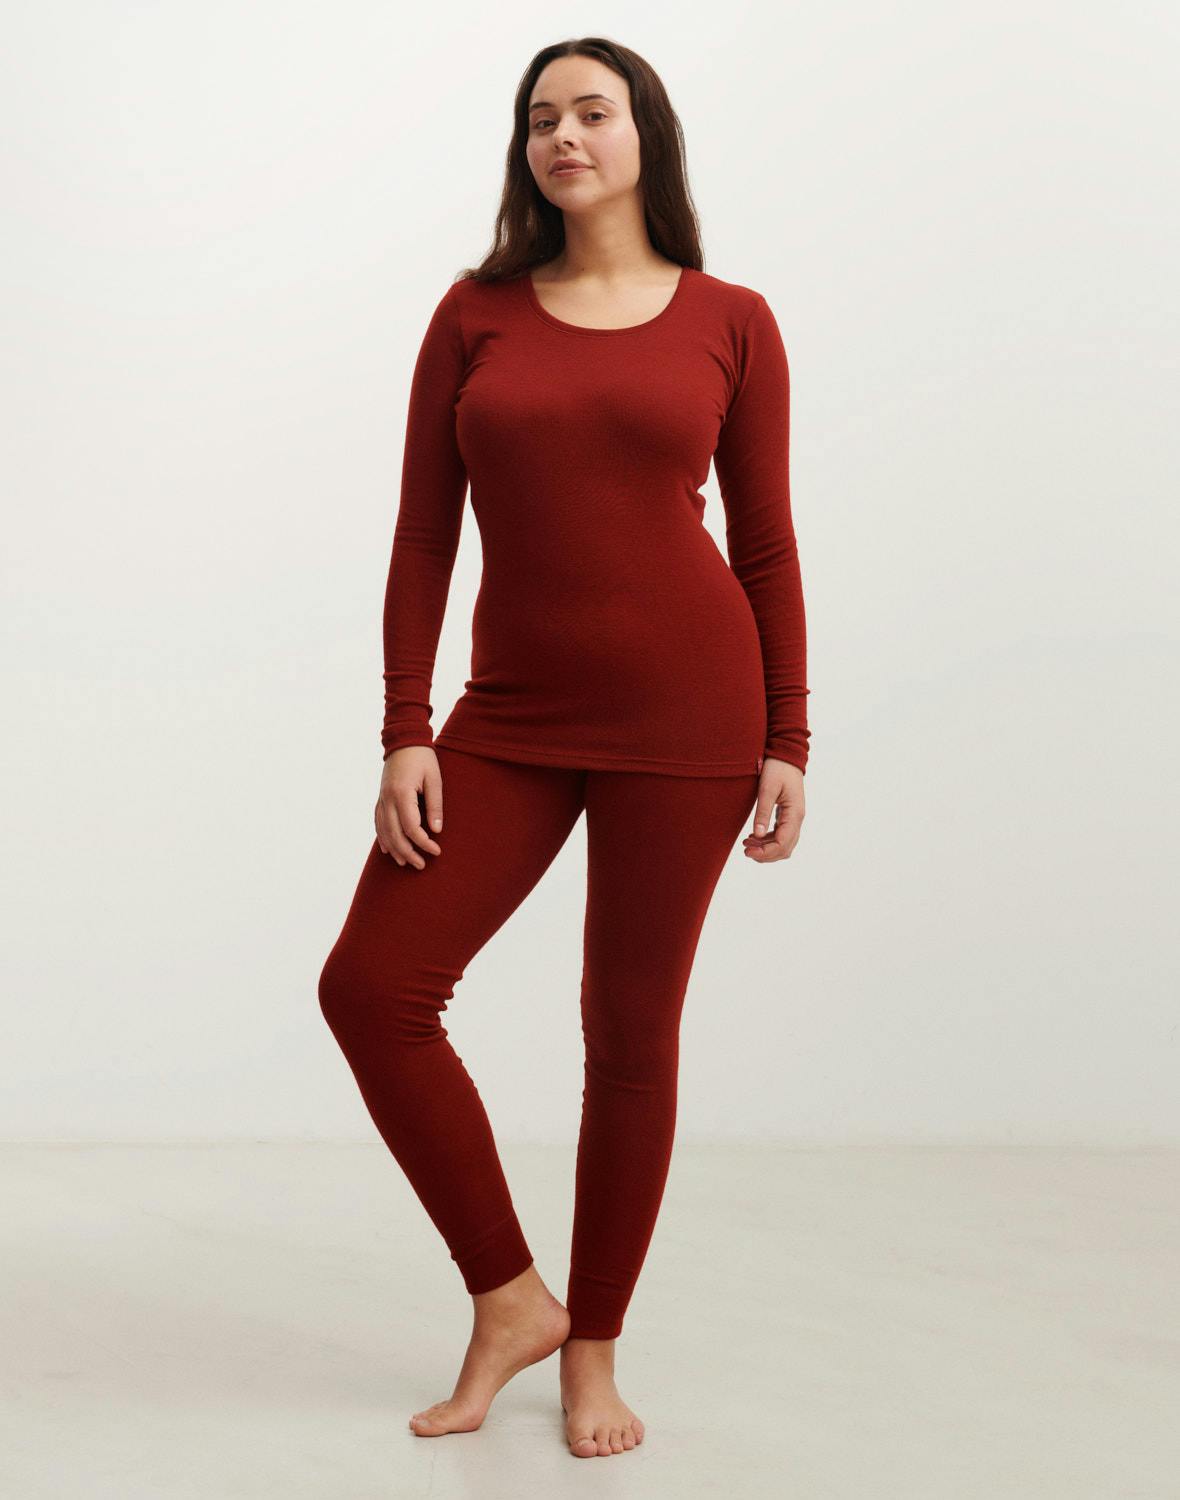 Merino wool underwear for women: tops & leggings - Dilling